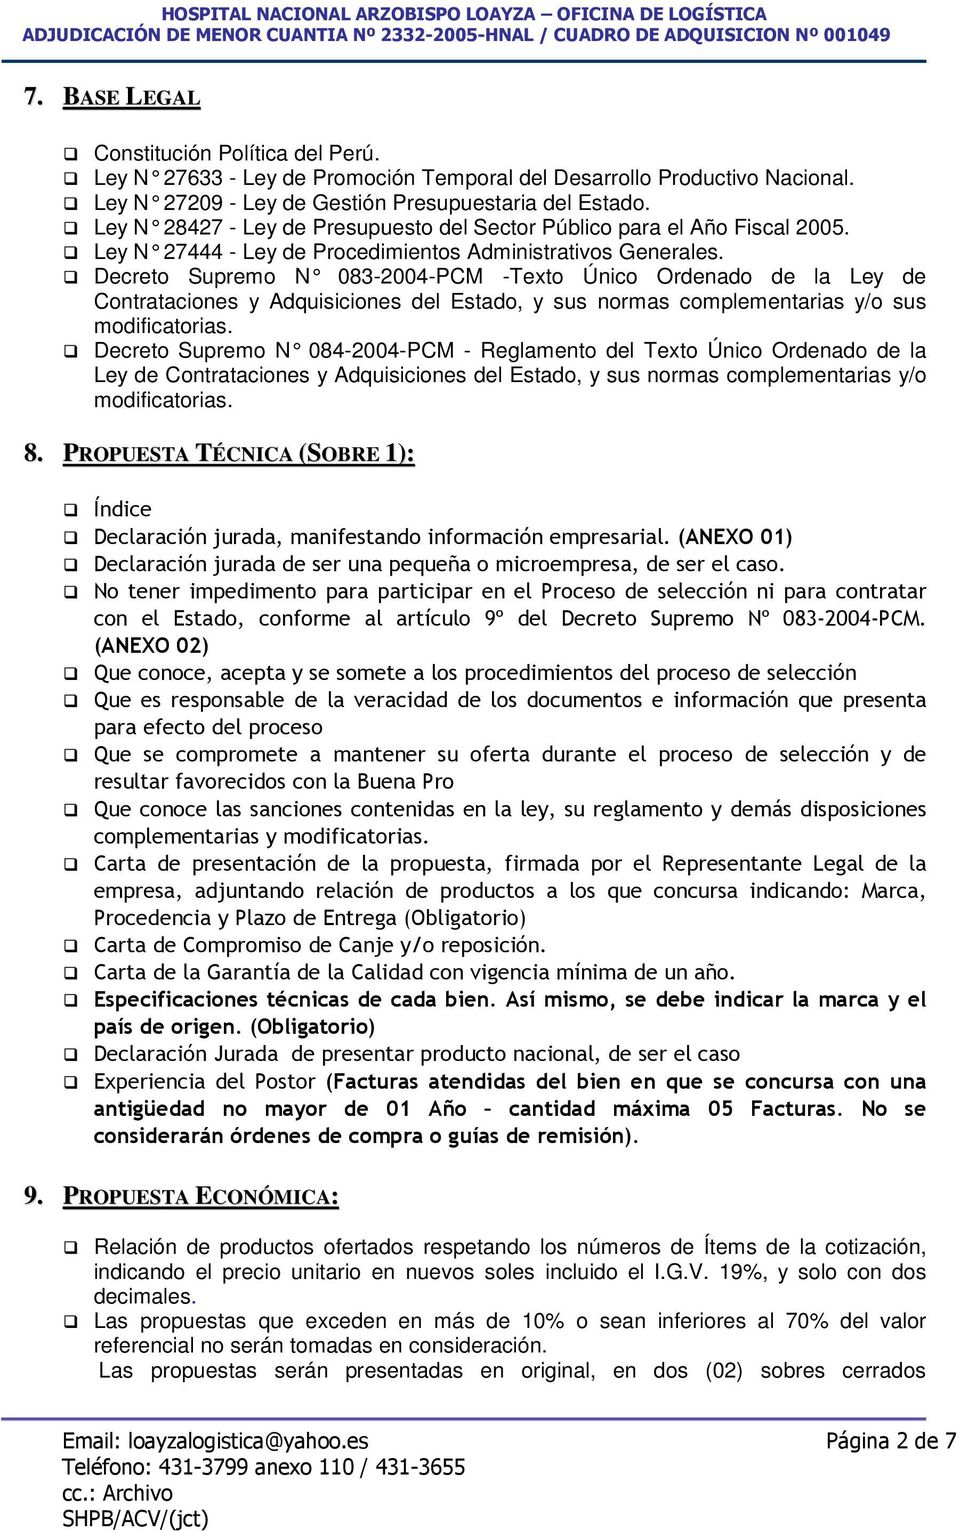 Decreto Supremo N 083-2004-PCM -Texto Único Ordenado de la Ley de Contrataciones y Adquisiciones del Estado, y sus normas complementarias y/o sus modificatorias.